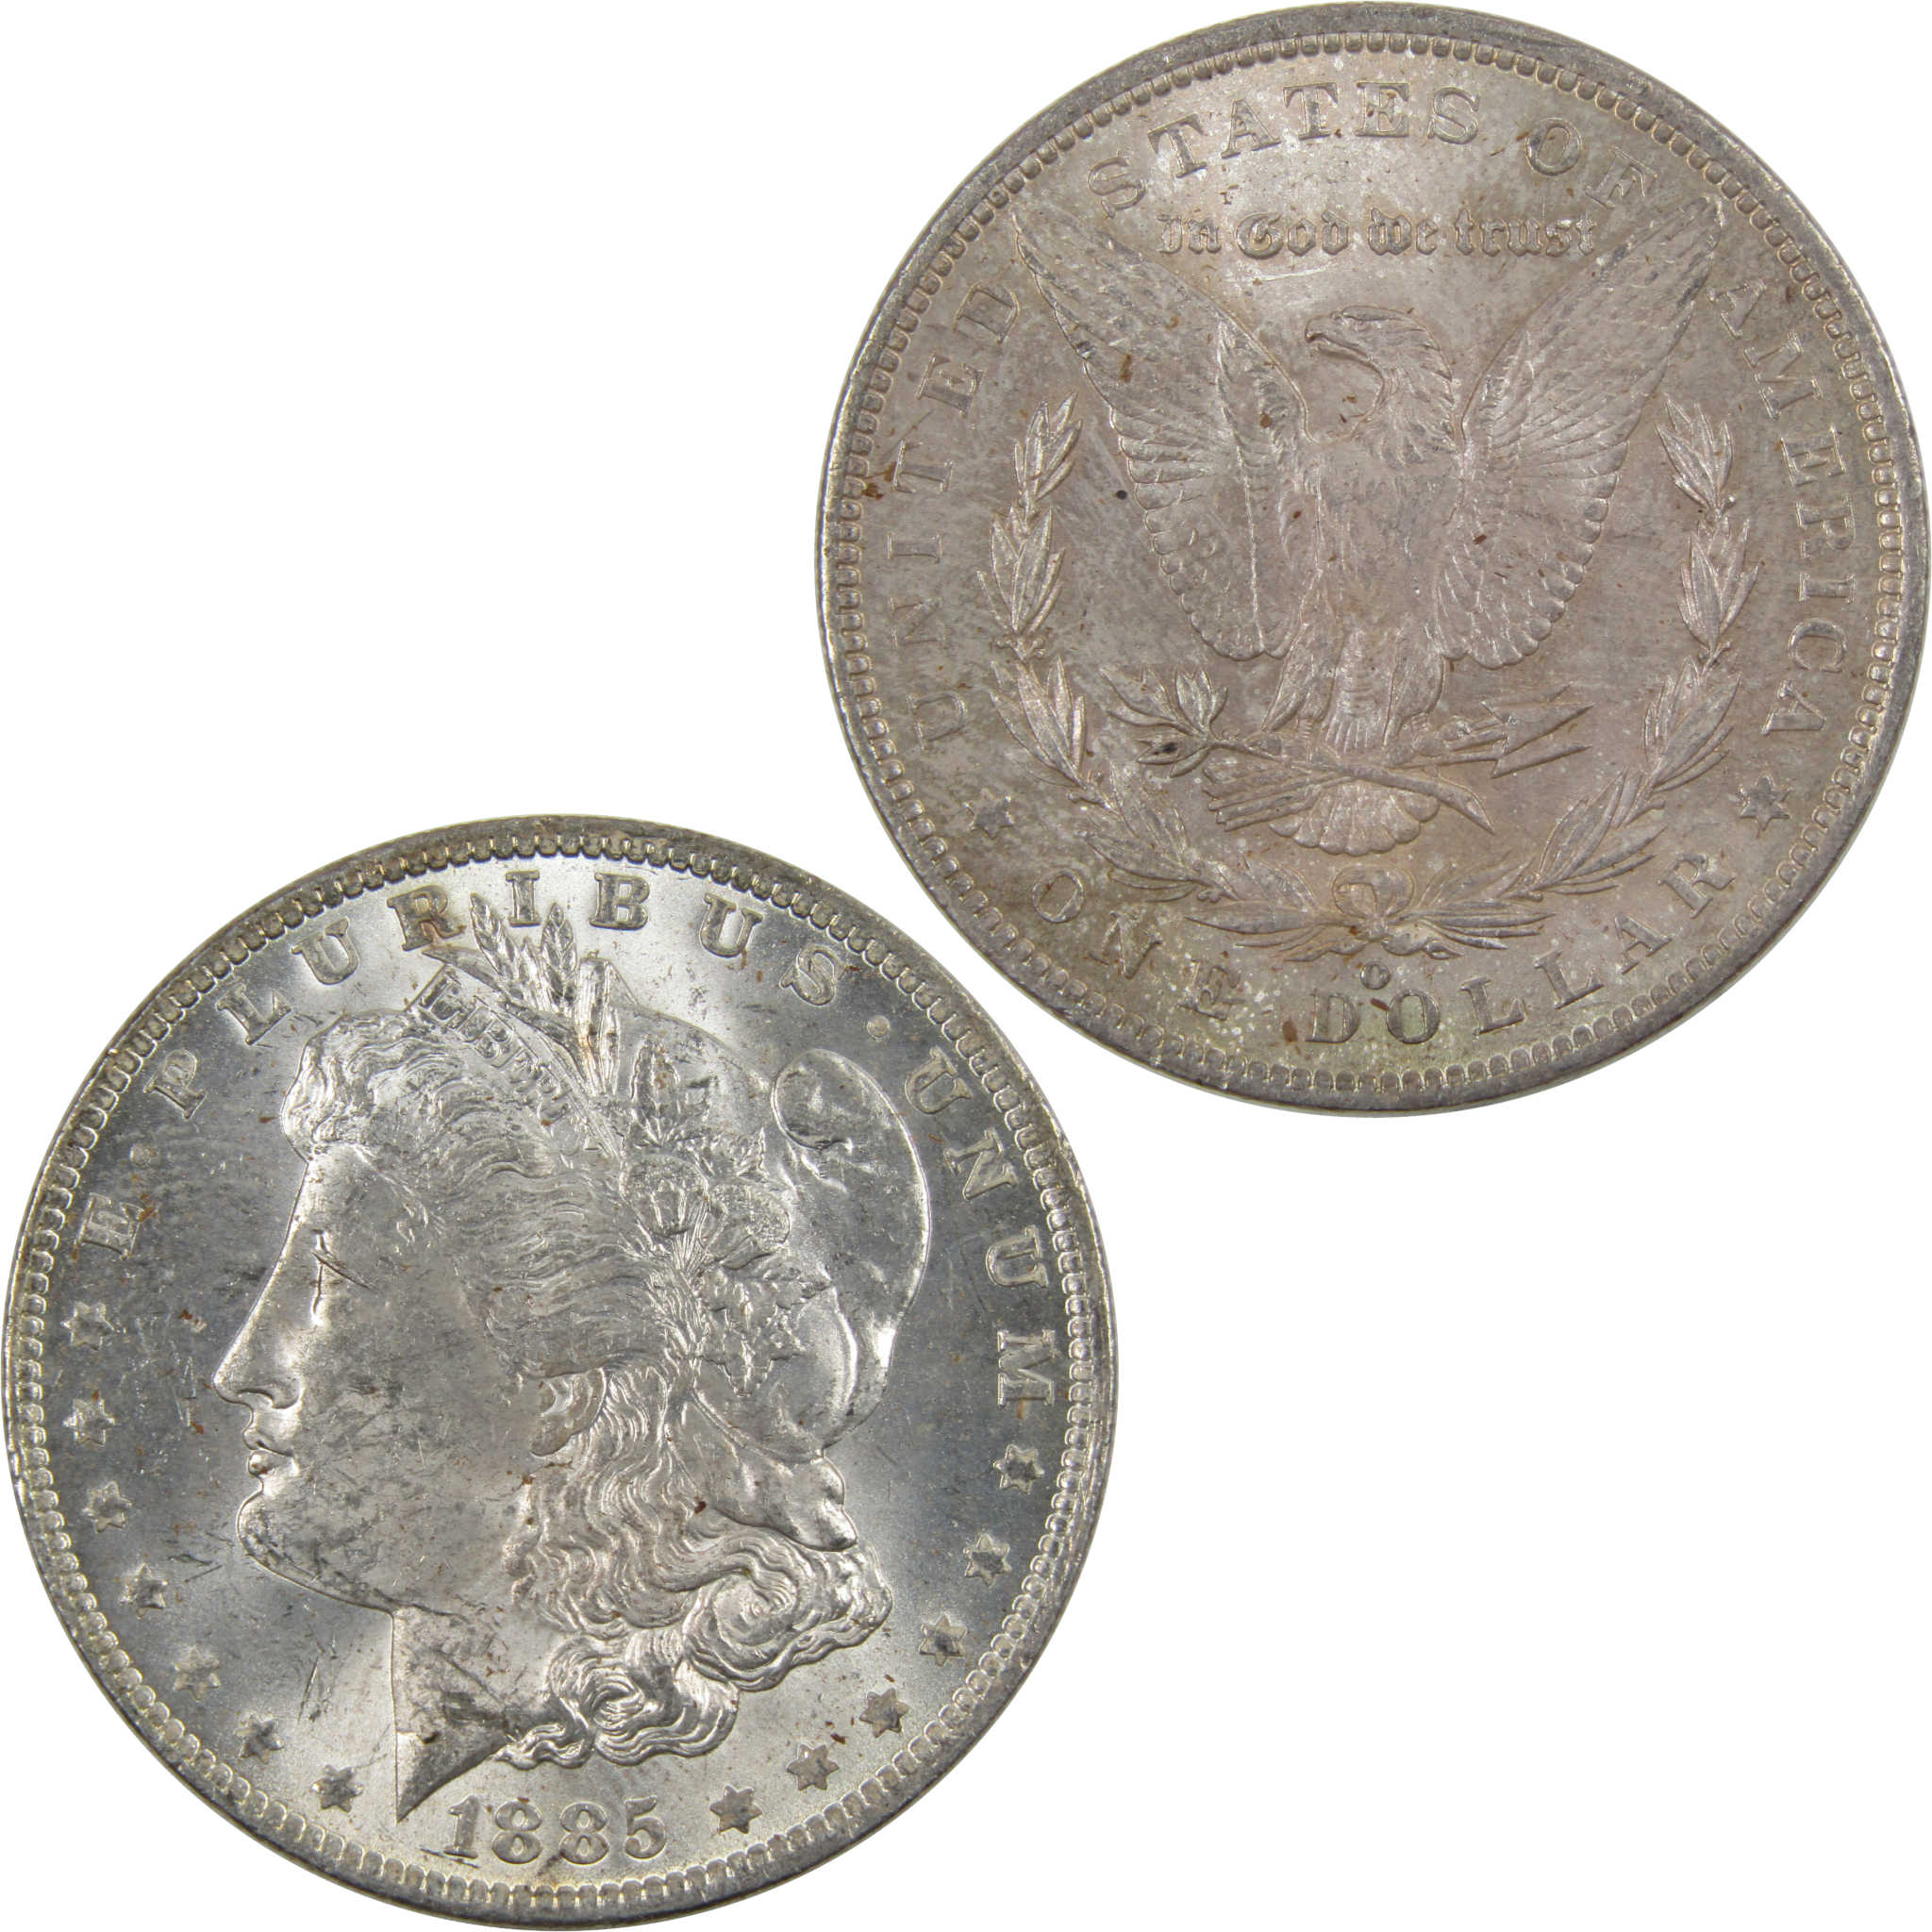 1885 O Morgan Dollar BU Uncirculated 90% Silver $1 Coin SKU:I4236 - Morgan coin - Morgan silver dollar - Morgan silver dollar for sale - Profile Coins &amp; Collectibles